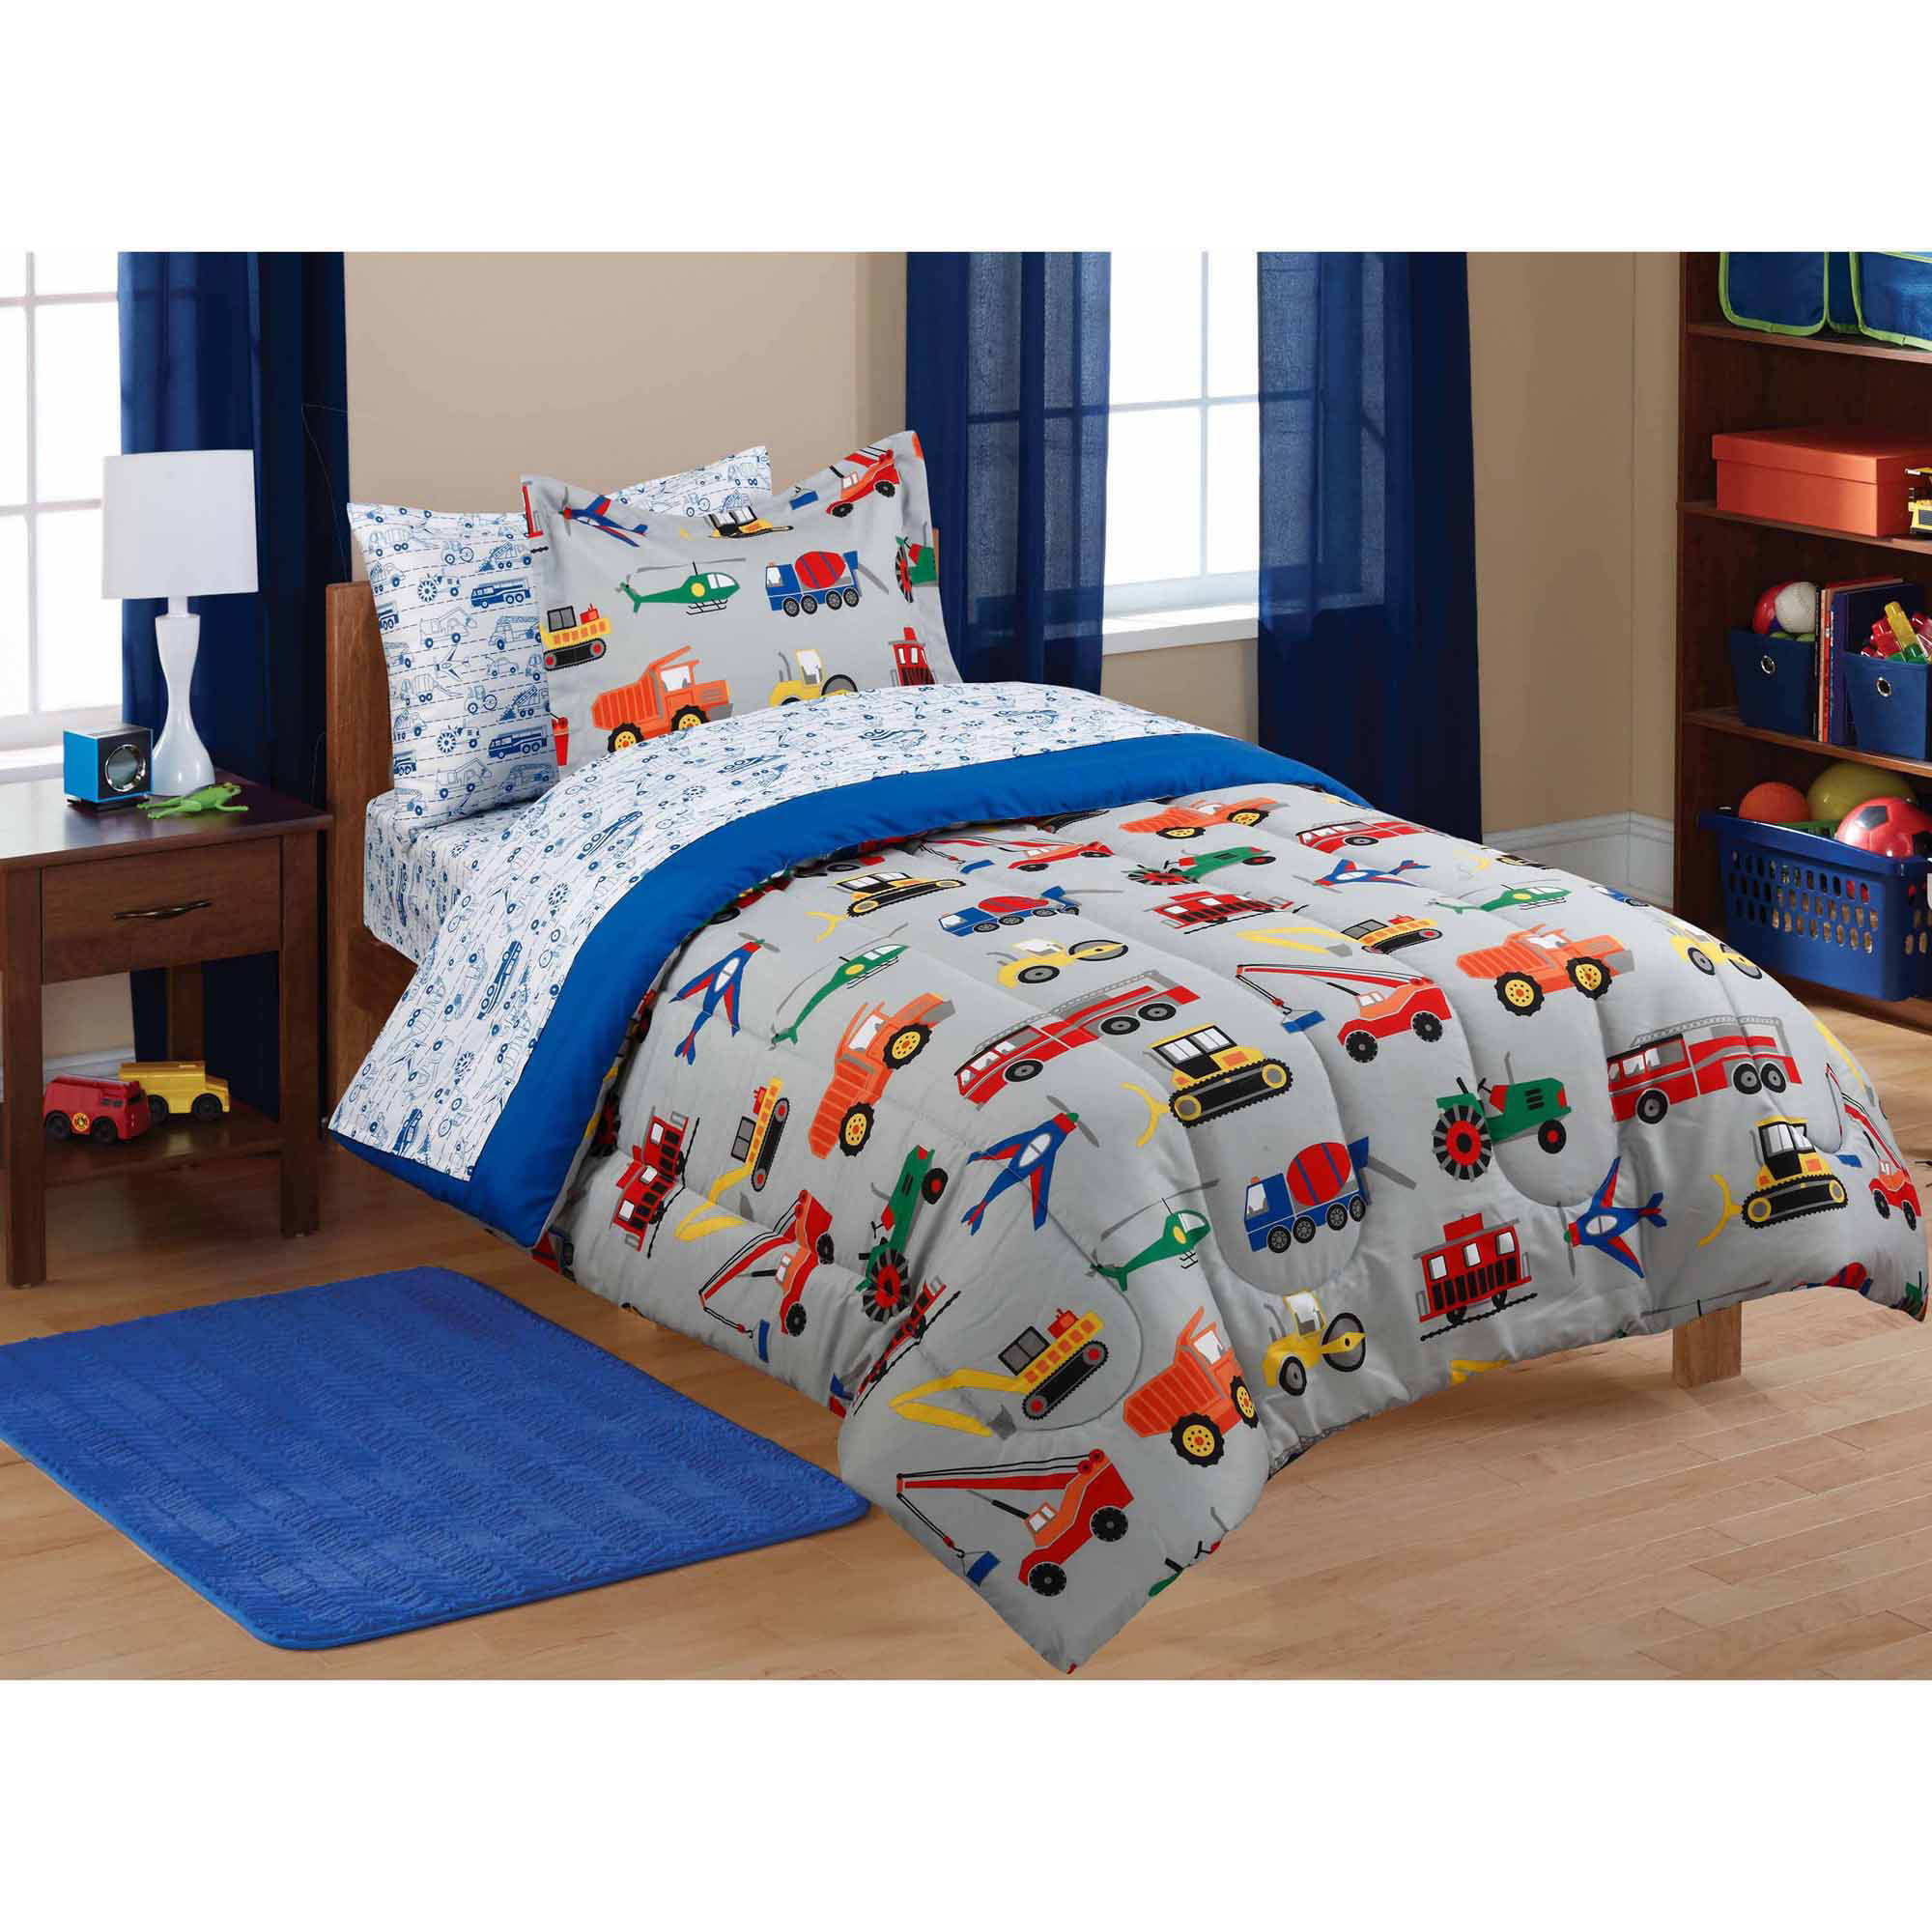 Walmart Bedroom Sets For Kids
 Mainstays Kids Transportation Bed in a Bag Coordinating